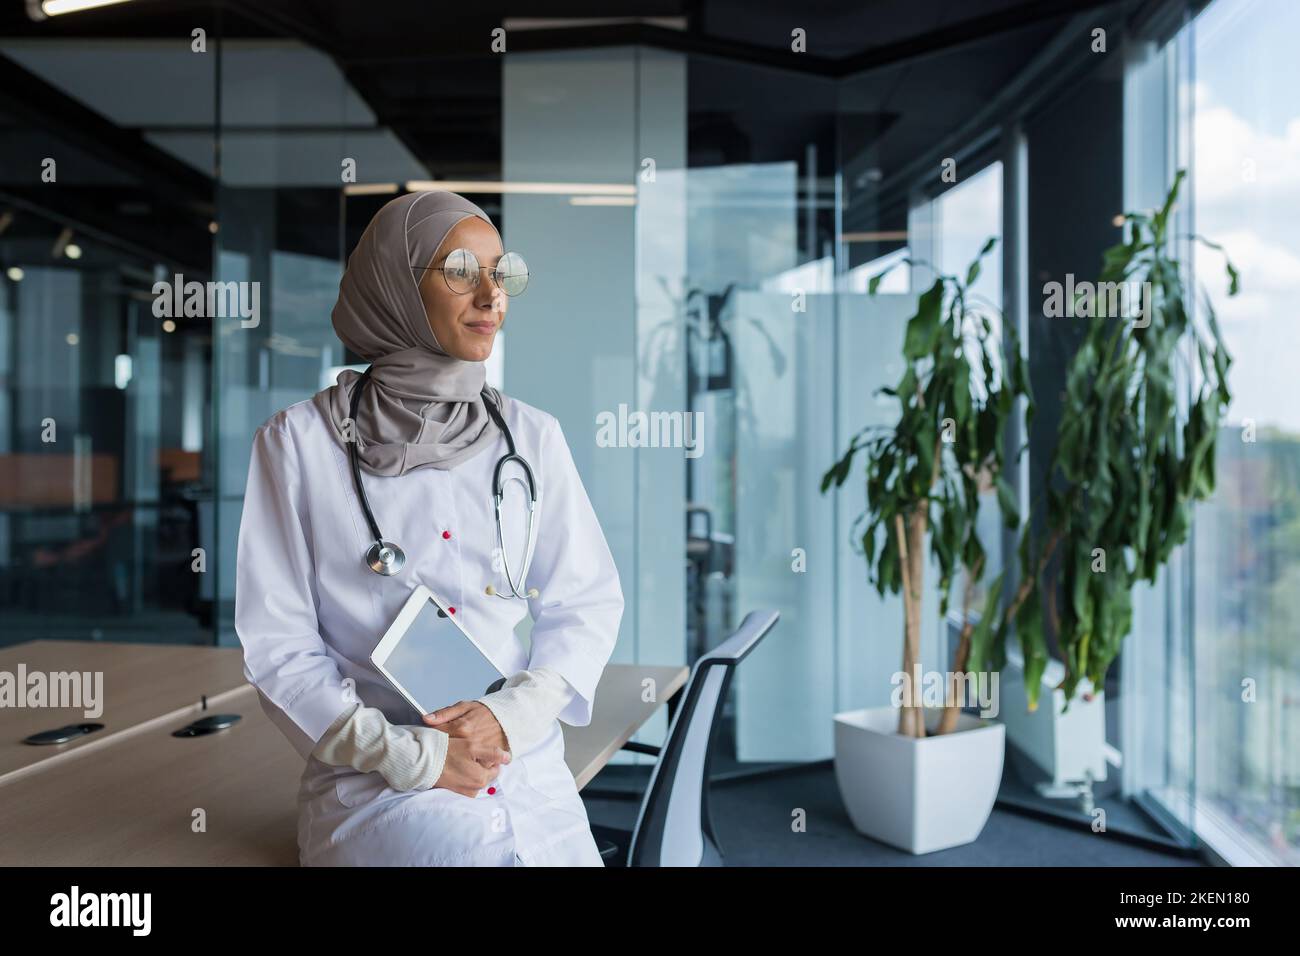 Une jeune femme musulmane heureuse et réfléchie, médecin arabe à l'hôpital, est assise à son bureau, tenant une tablette entre ses mains, regardant la fenêtre, souriant, aimant son travail. Banque D'Images